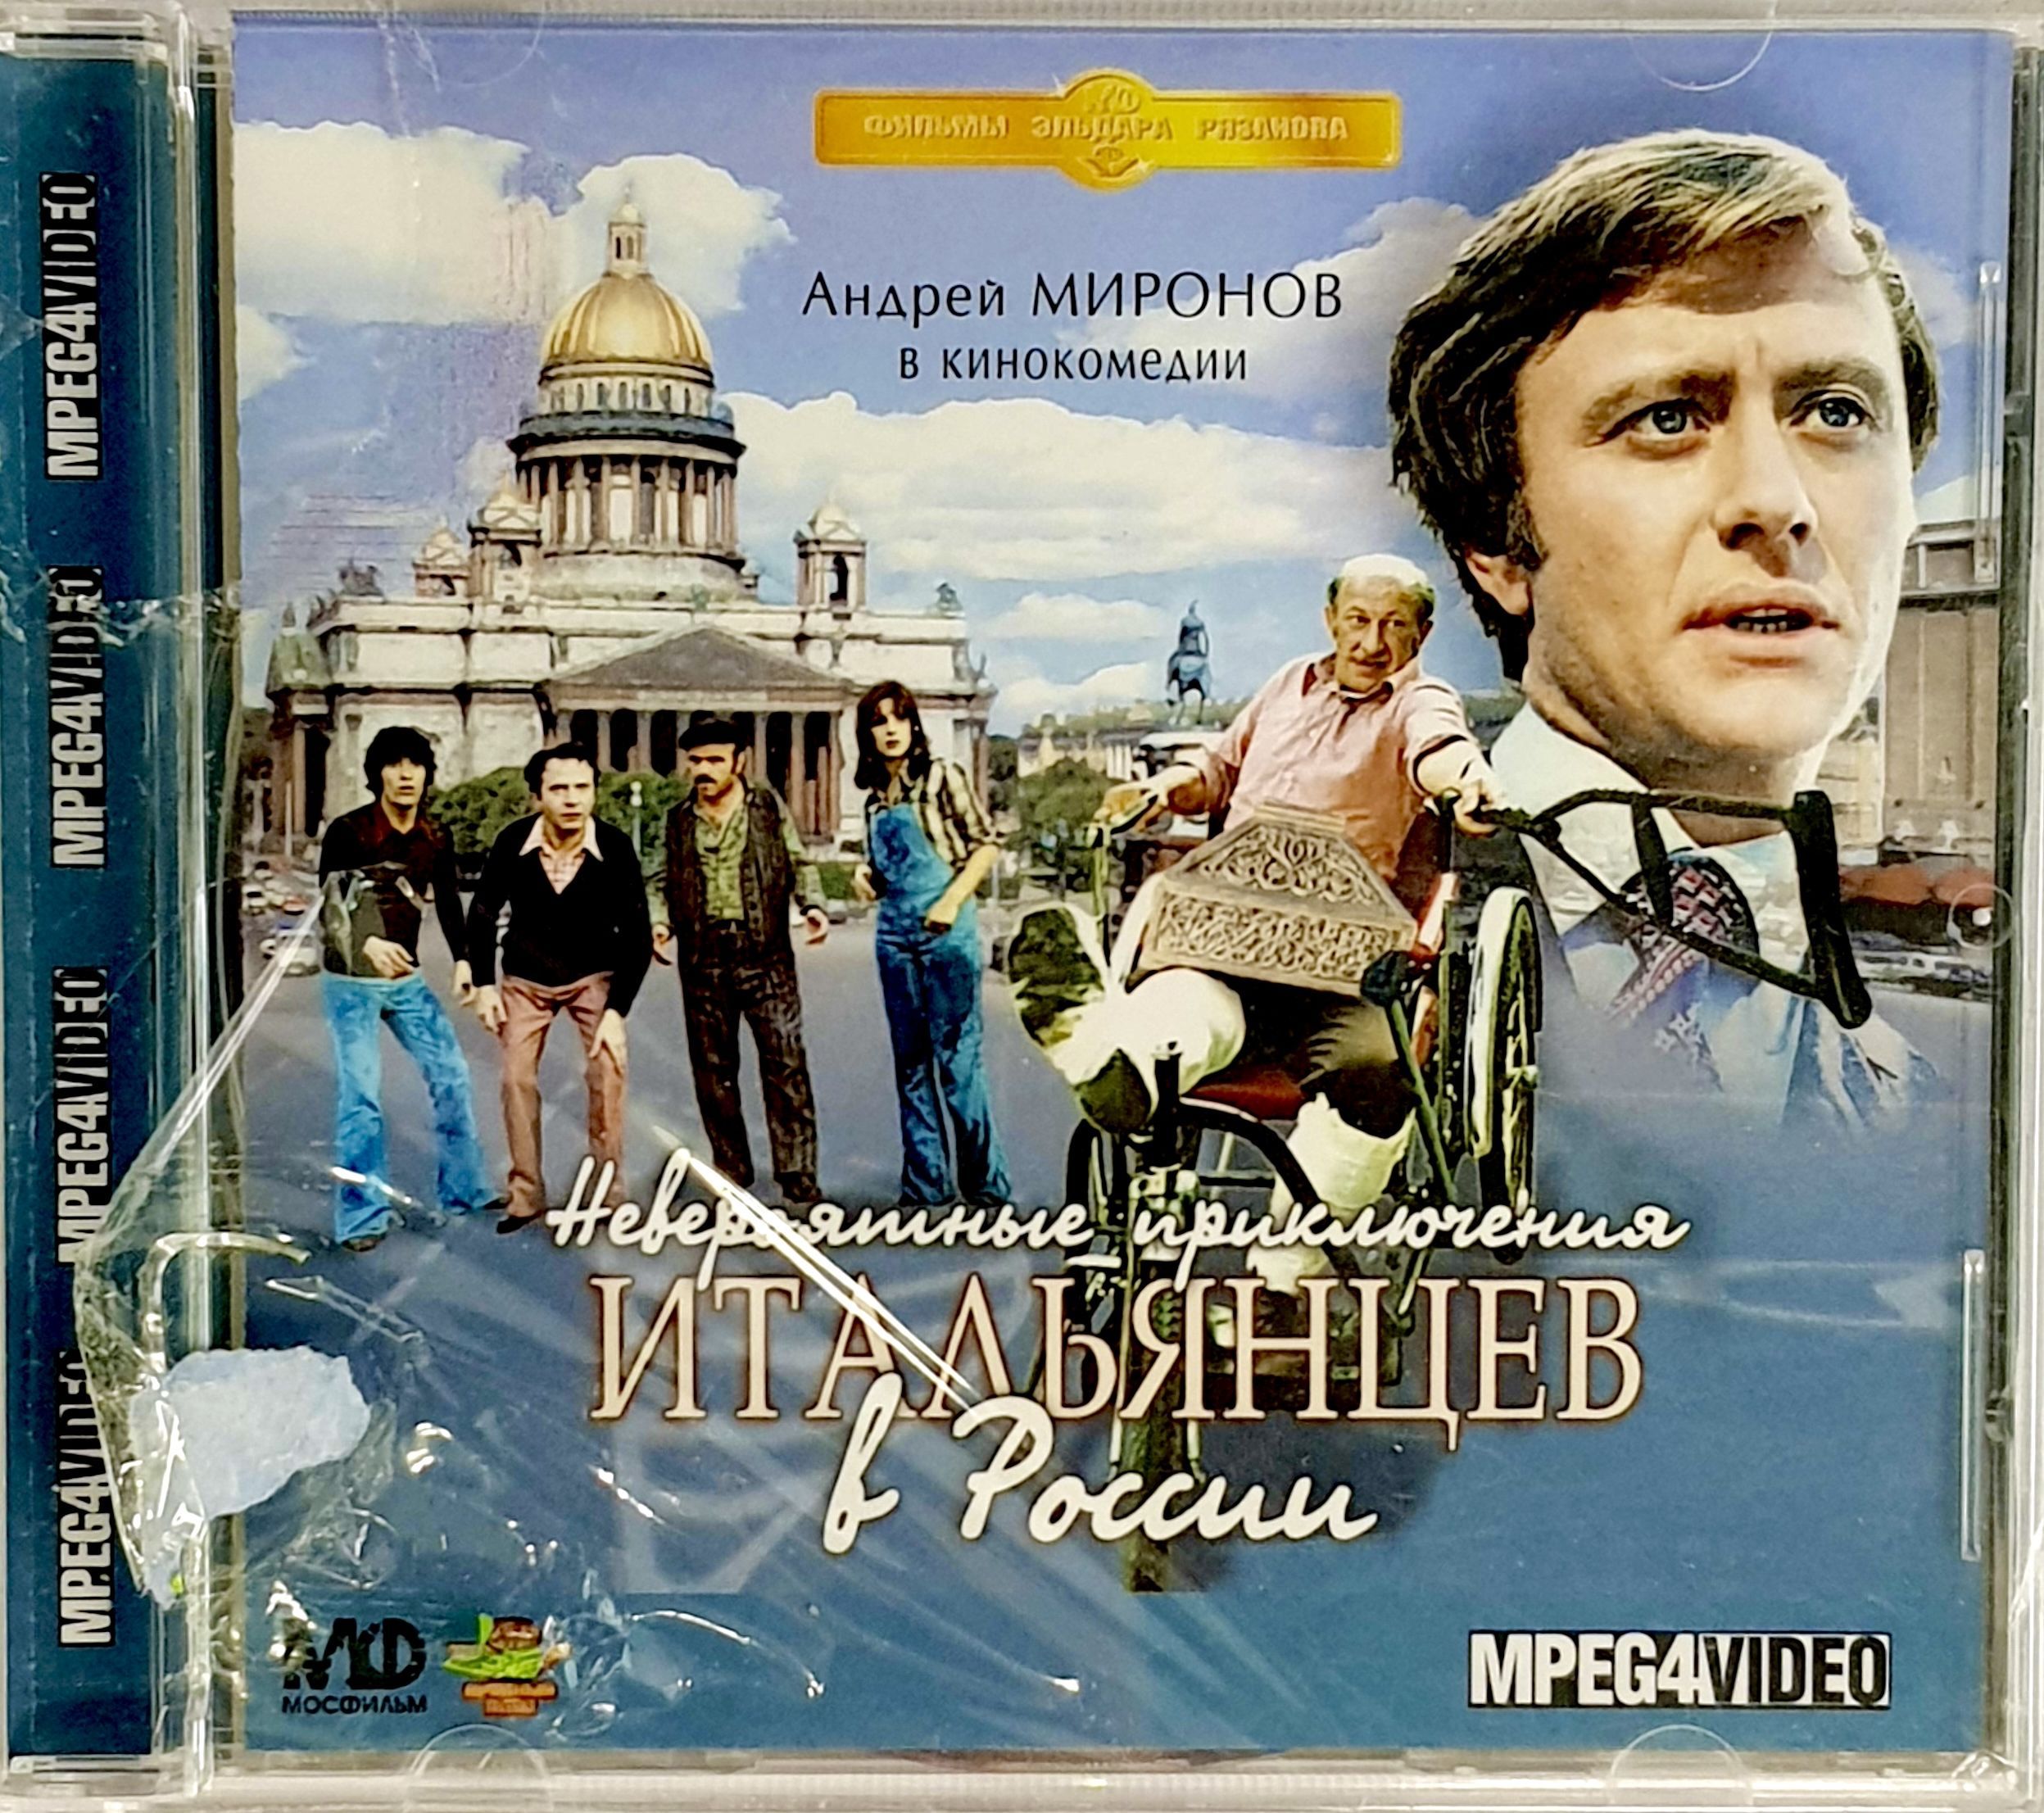 Невероятные приключения 2014. Невероятные приключения итальянцев в России (1973). Невероятные приключения итальянцев в России 1973 Постер.